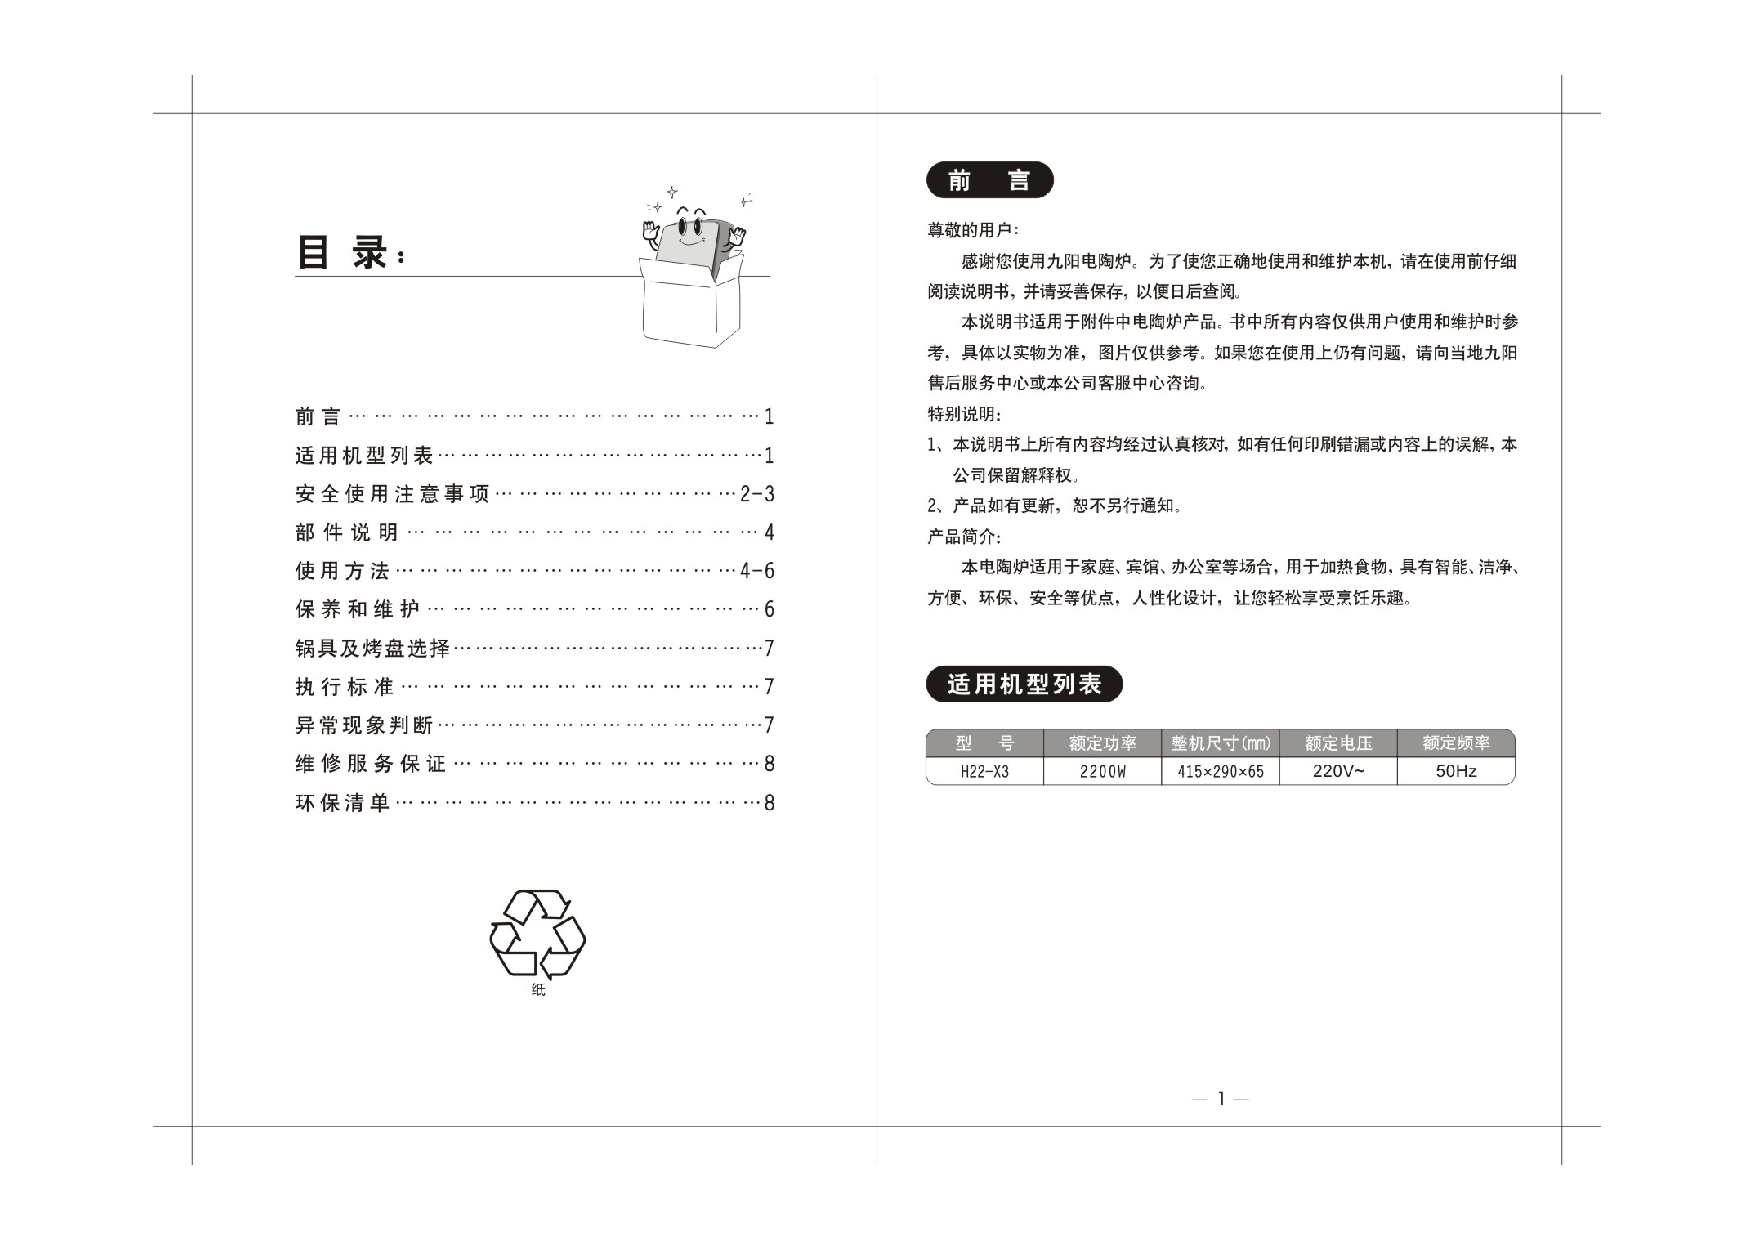 九阳 Joyyoung H22-X3 使用说明书 第1页